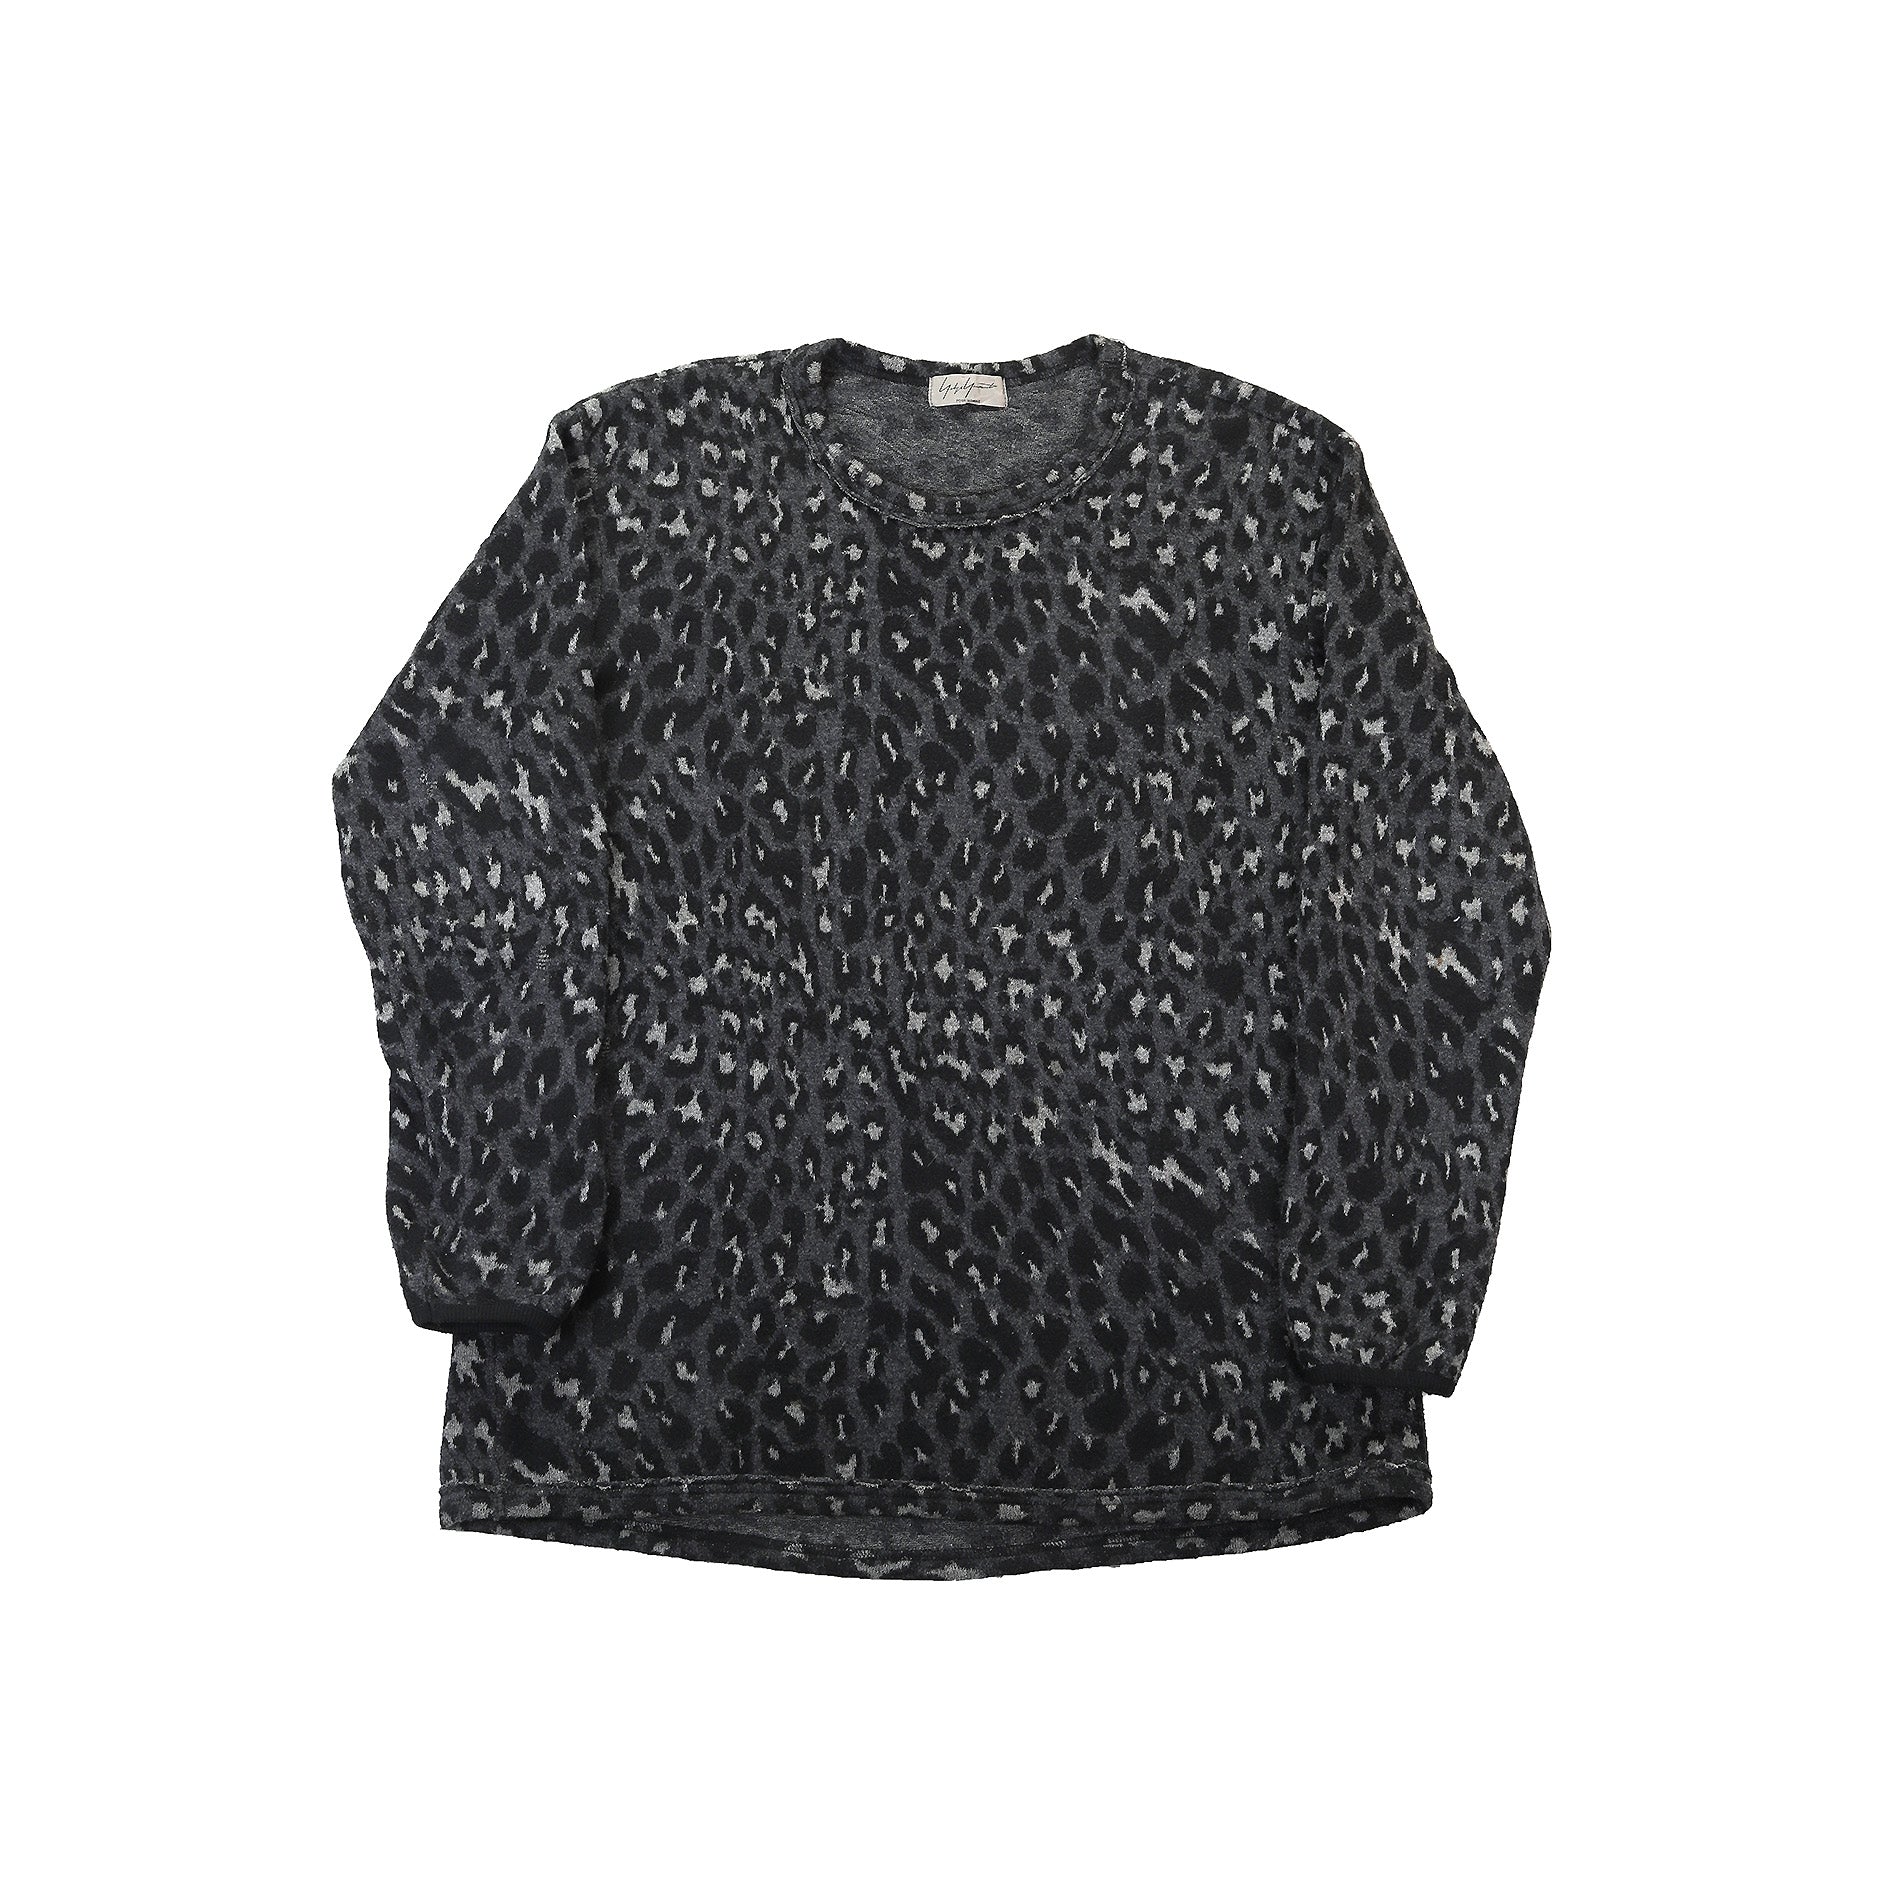 Yohji Yamamoto AW2013 Leopard Mohair Knit